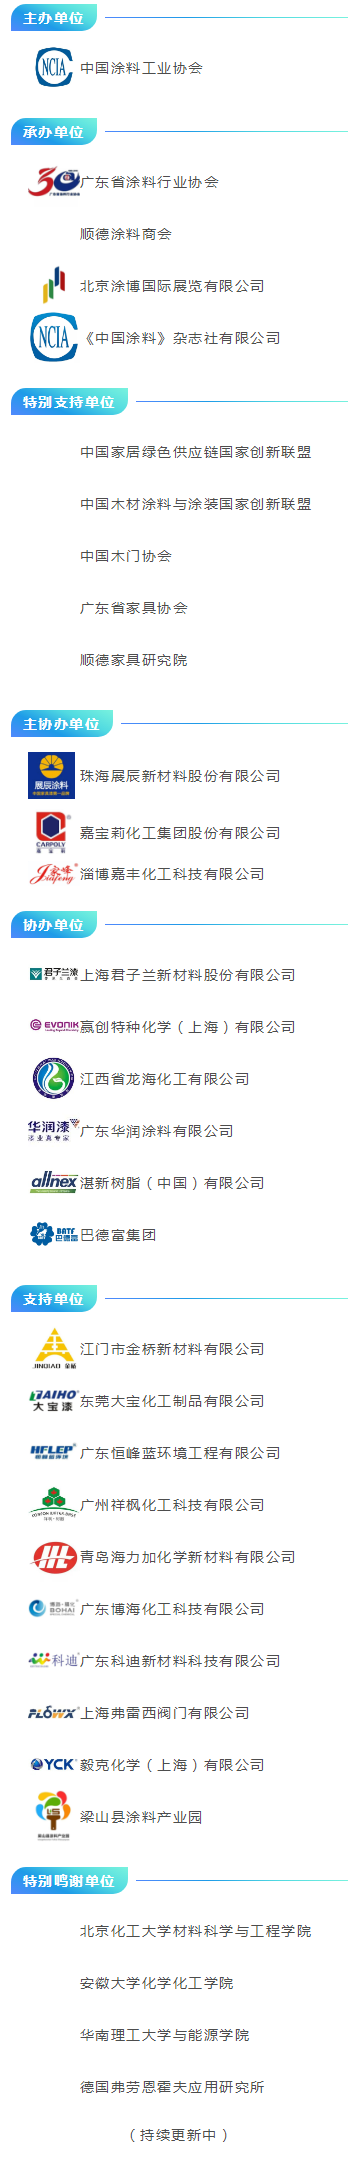 会议议程·7月27-29日---第十五届中国国际水性木器涂料发展研讨会暨绿色木器涂料涂装技术论坛_20220725185730_02